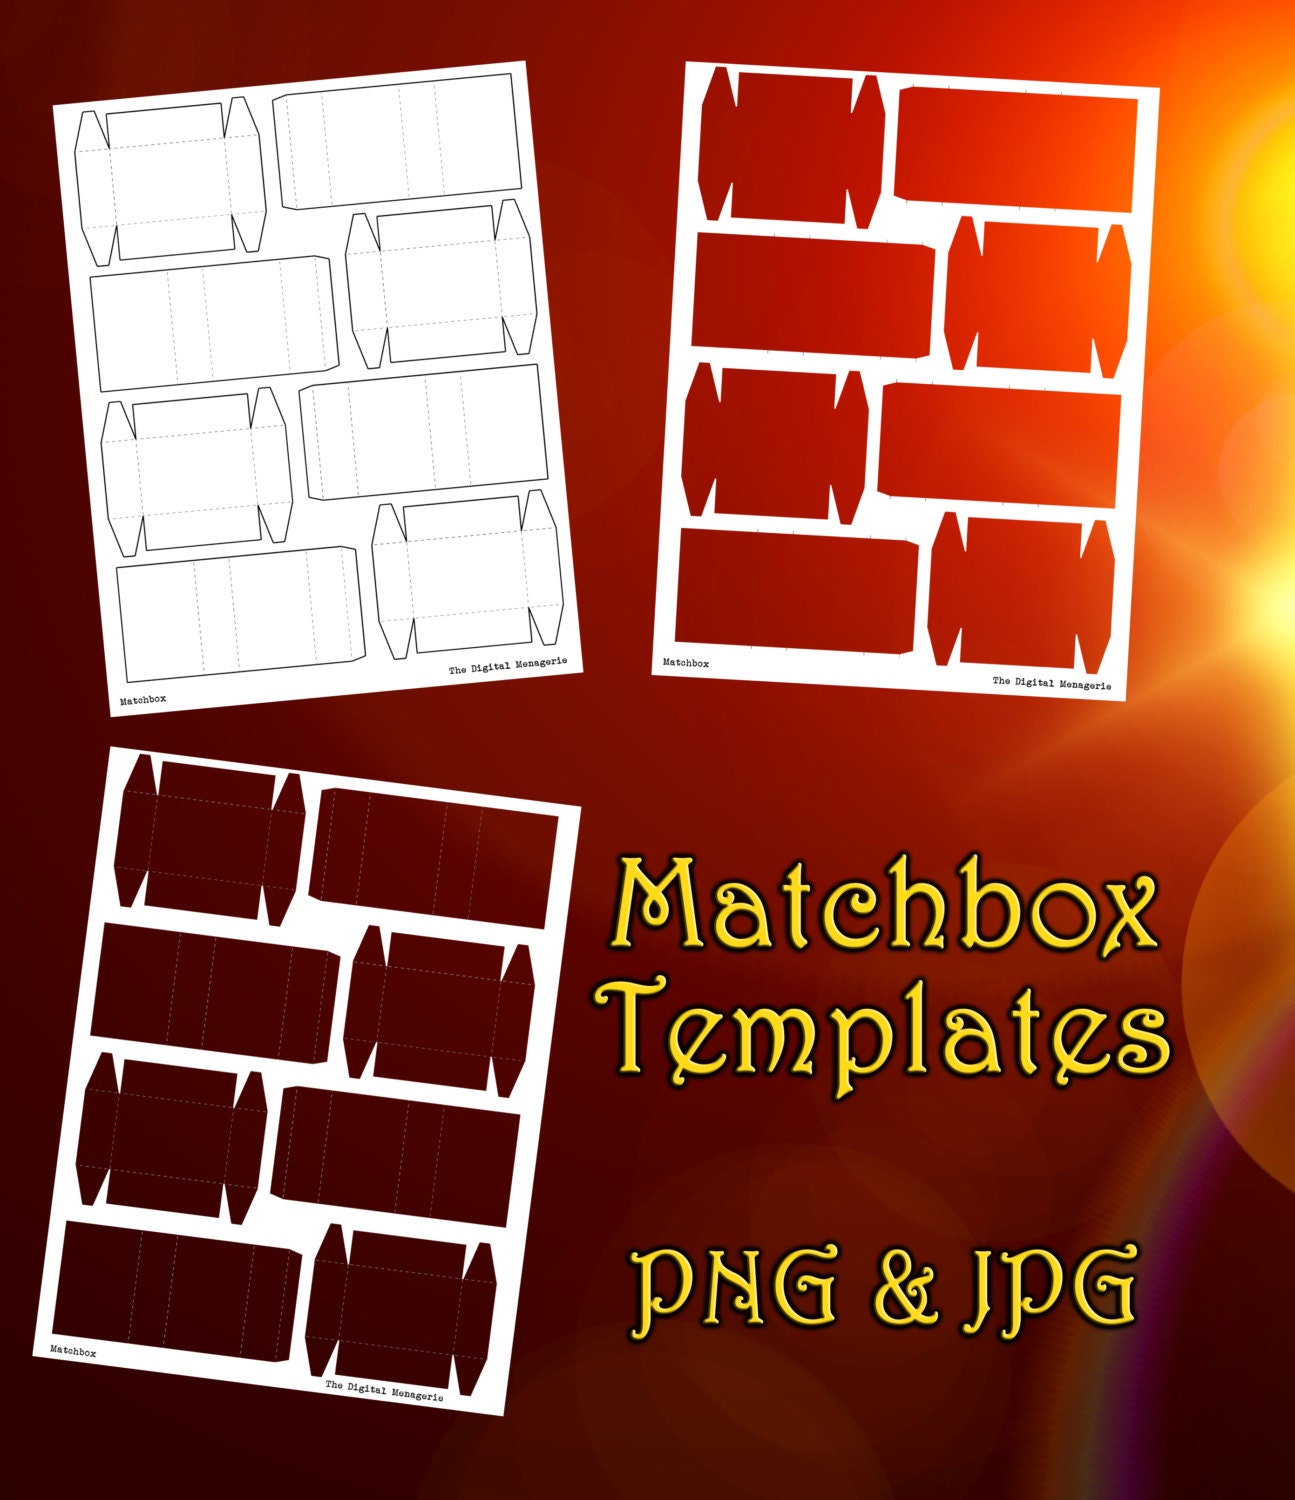 matchbook templates